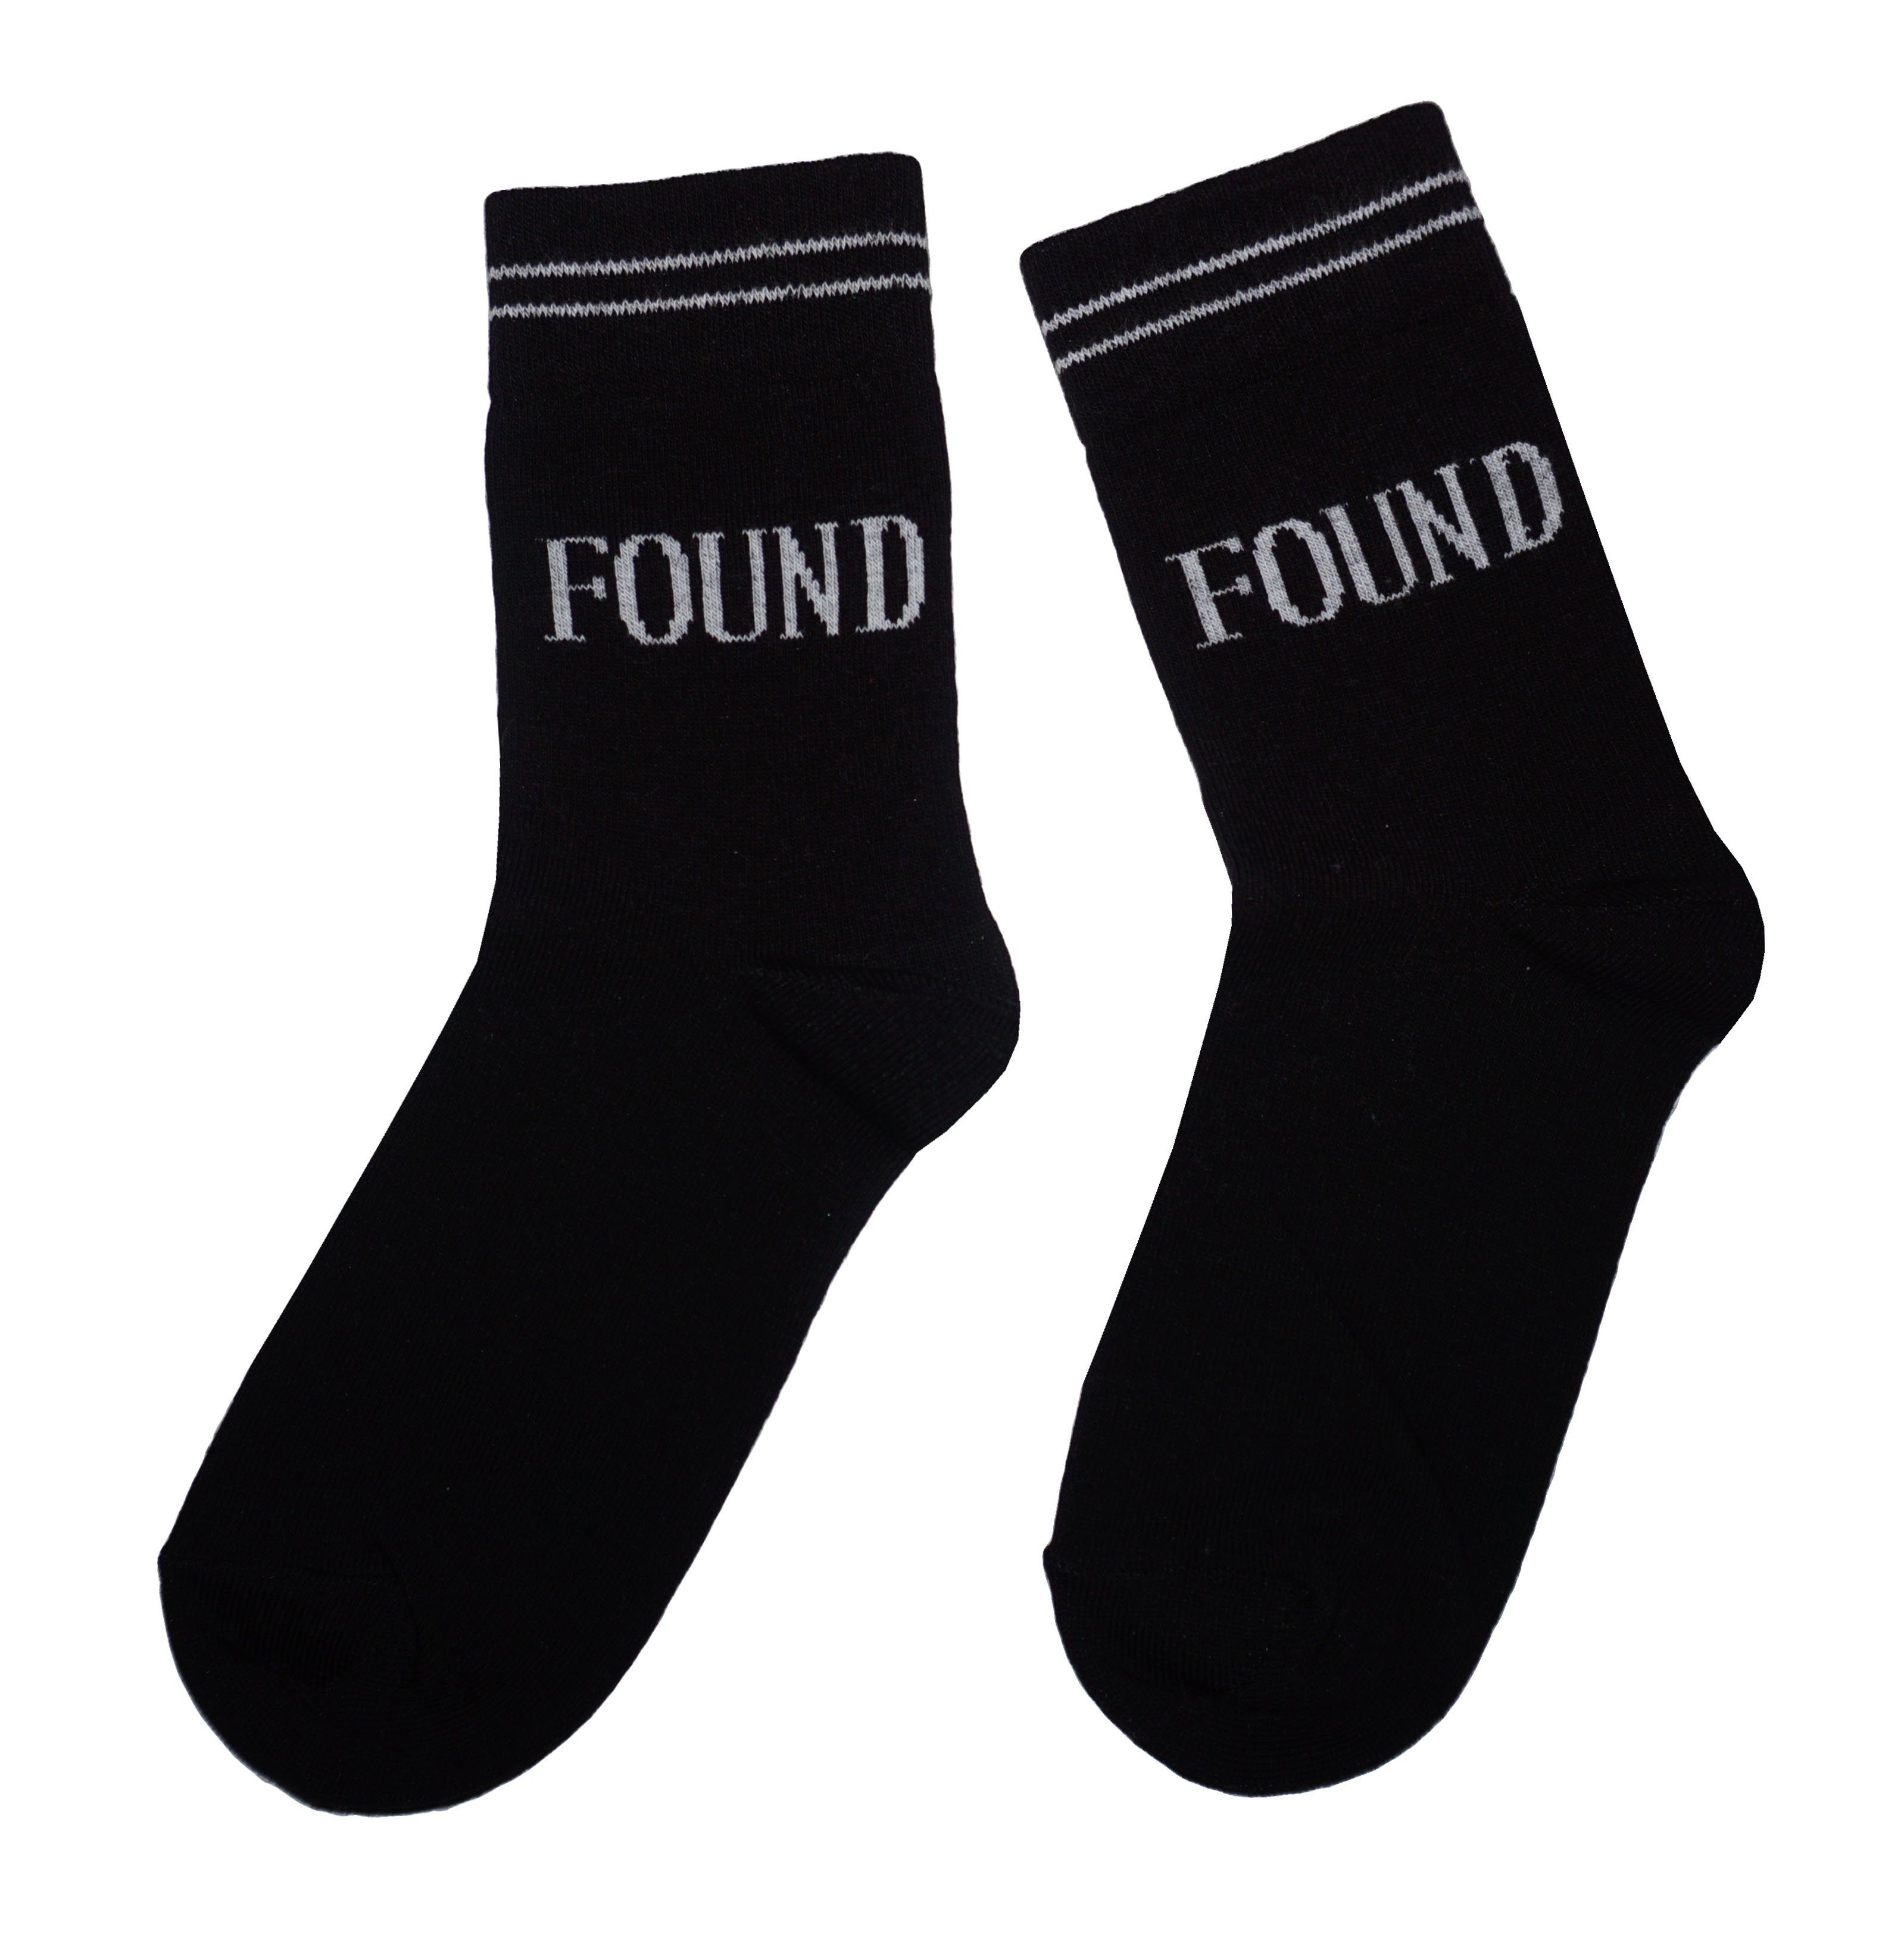 WERI SPEZIALS Strumpfhersteller GmbH Socken »Herren Socken >>Found<< mit  Baumwolle« online kaufen | OTTO